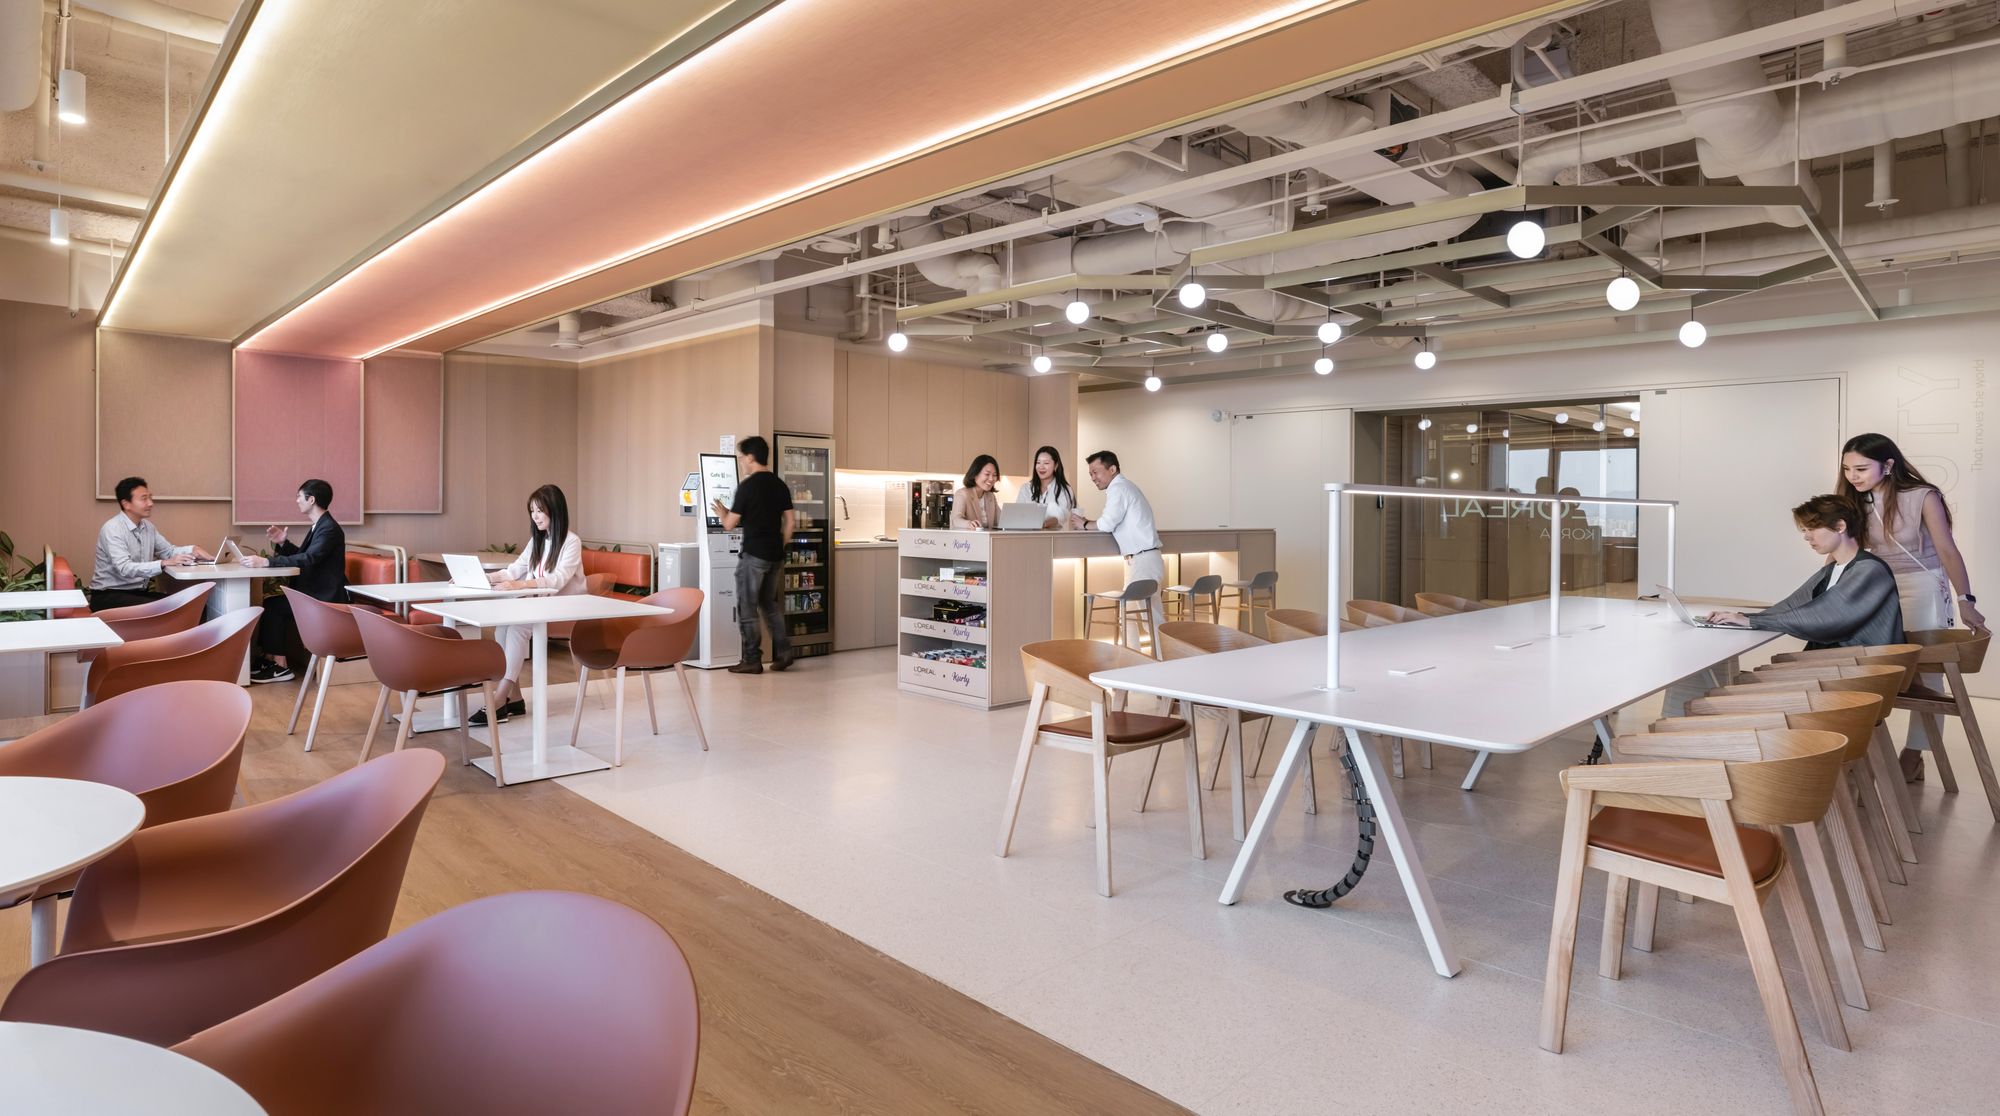 图片[11]|欧莱雅韩国办事处——首尔|ART-Arrakis | 建筑室内设计的创新与灵感